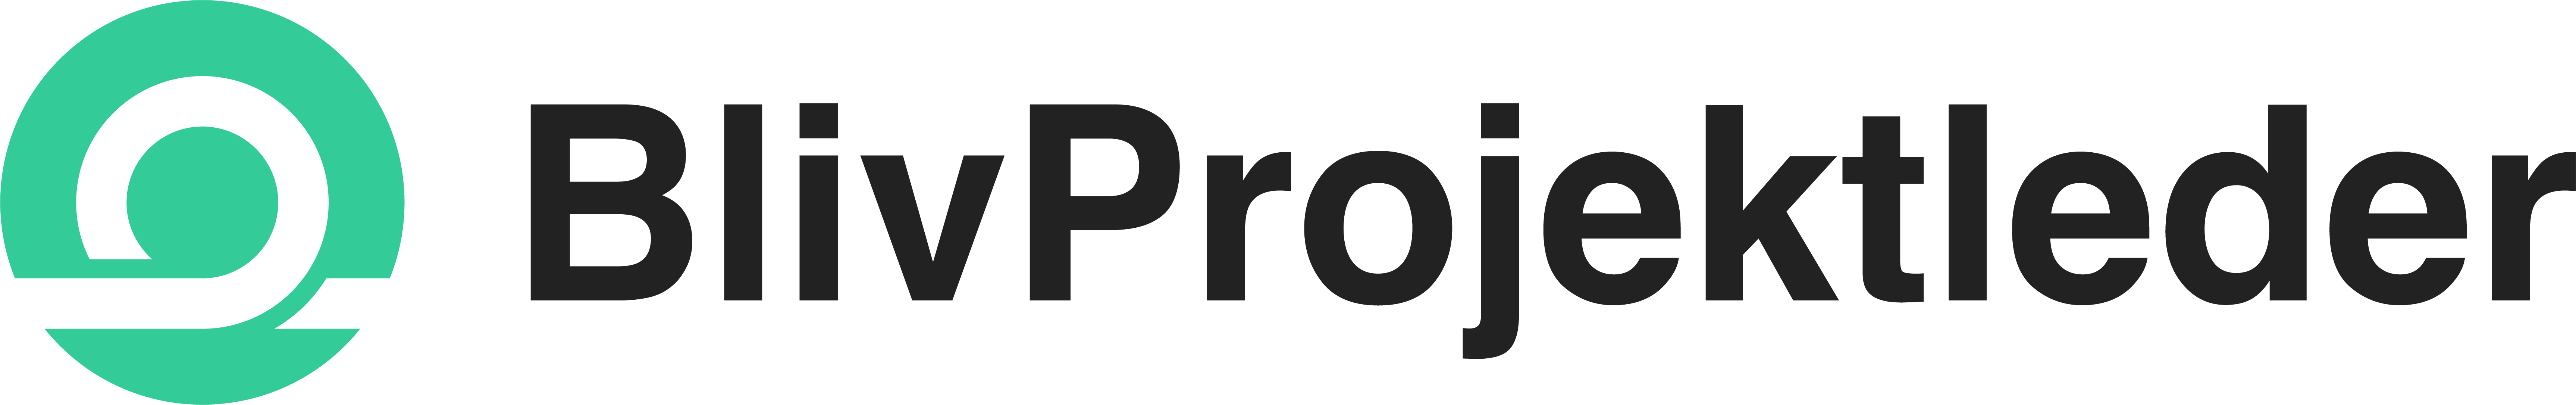 BlivProjektleder logo